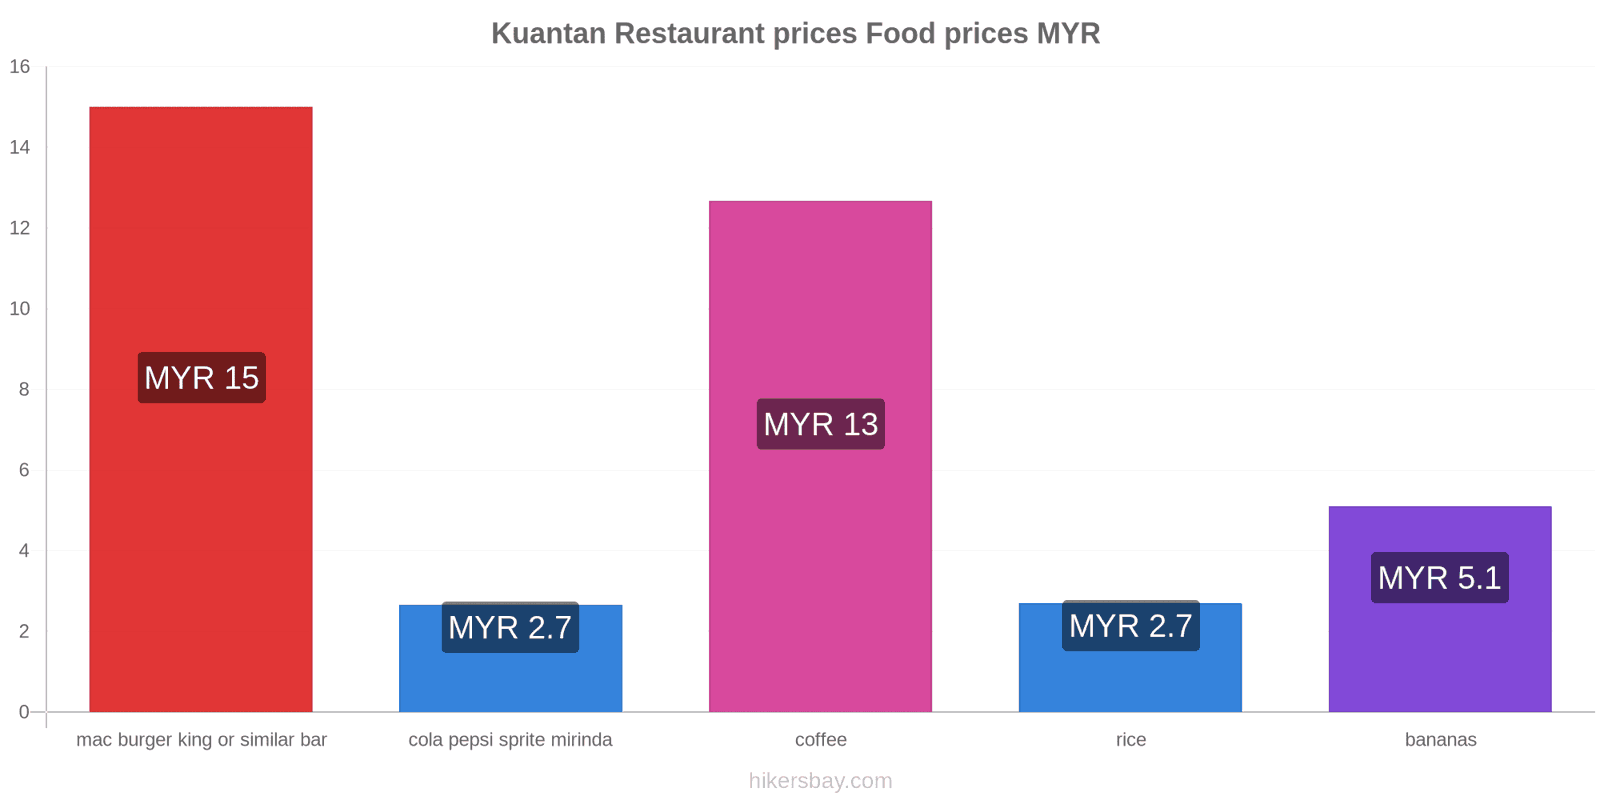 Kuantan price changes hikersbay.com